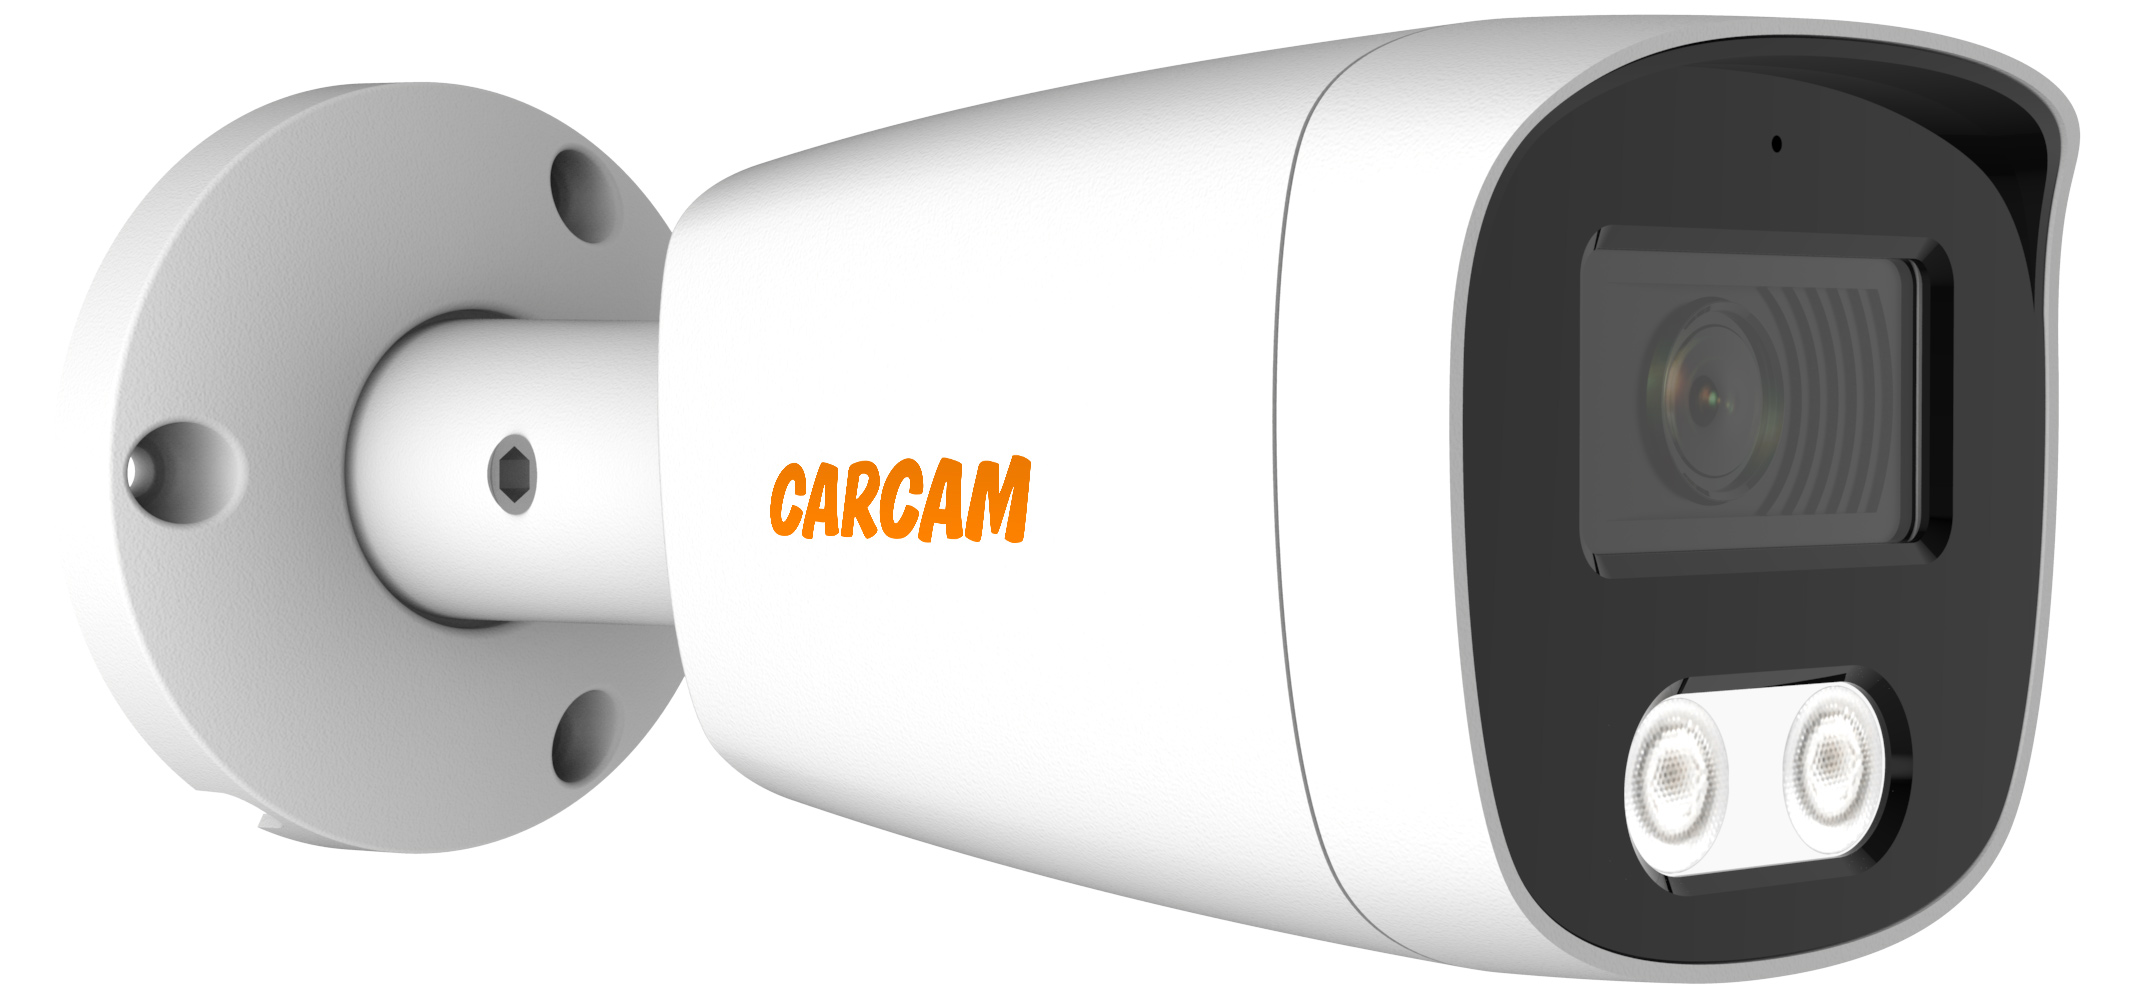 Цилиндрическая AHD камера CARCAM 5MP Bullet HD Camera 5145 камера видеонаблюдения carcam 4mp bullet ip camera 4177 2 8 12mm